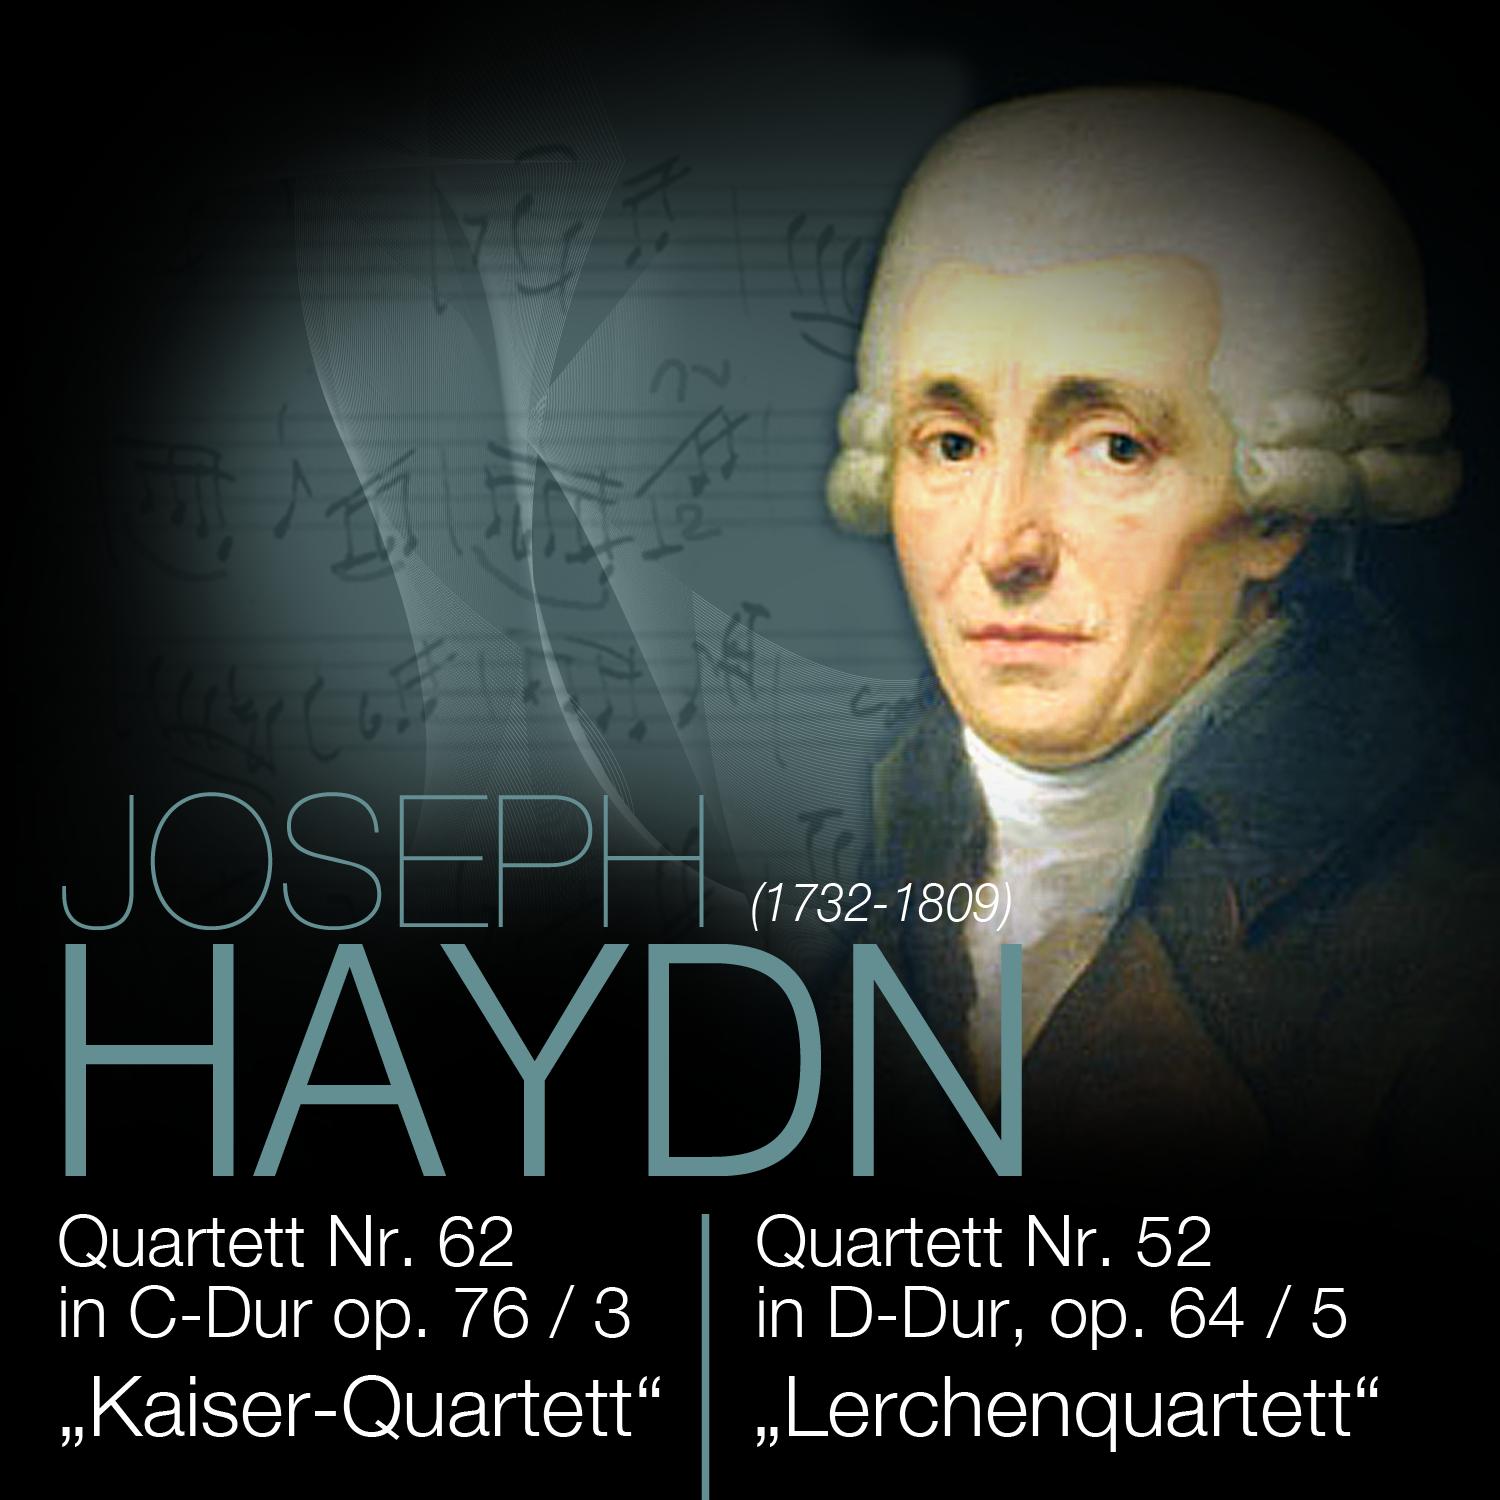 Haydn: Quartett Nr. 62 in CDur op. 76 3 KaiserQuartett"  Quartett Nr. 52 in DDur, op. 64 5 Lerchenquartett"